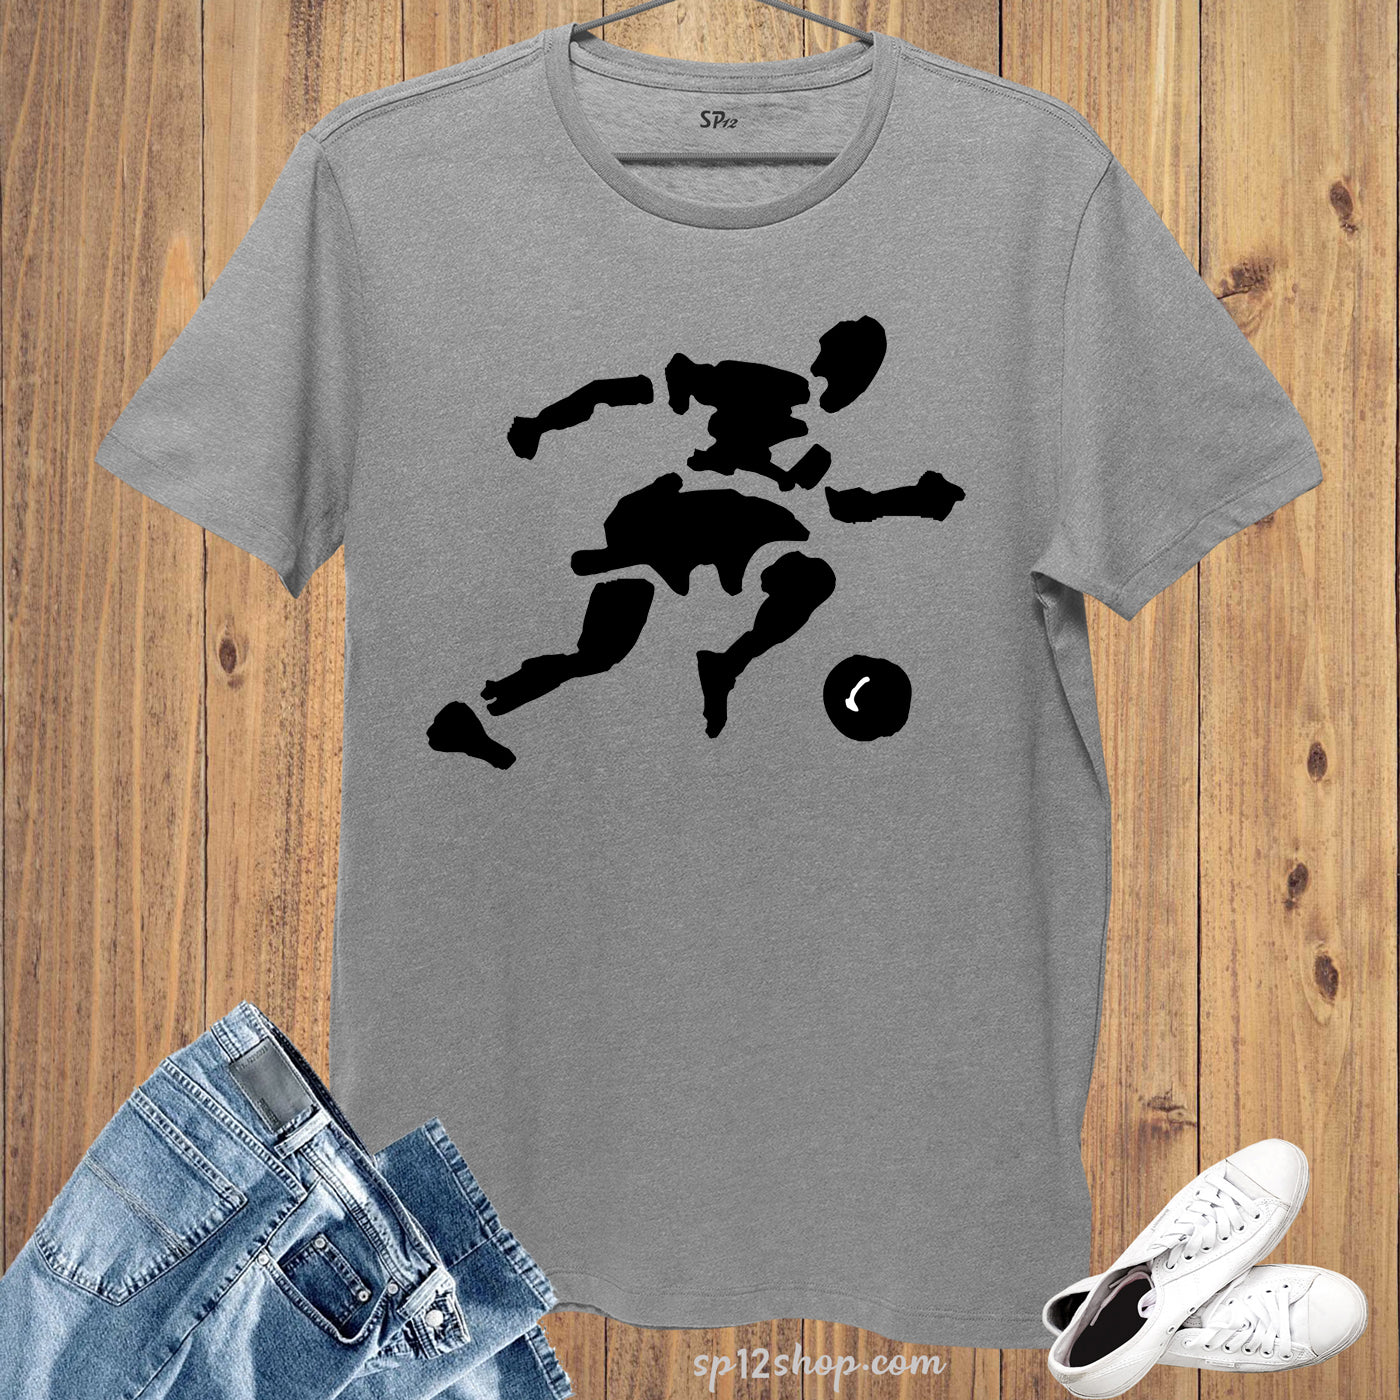 Footballer Football Match Soccer Sports T shirt